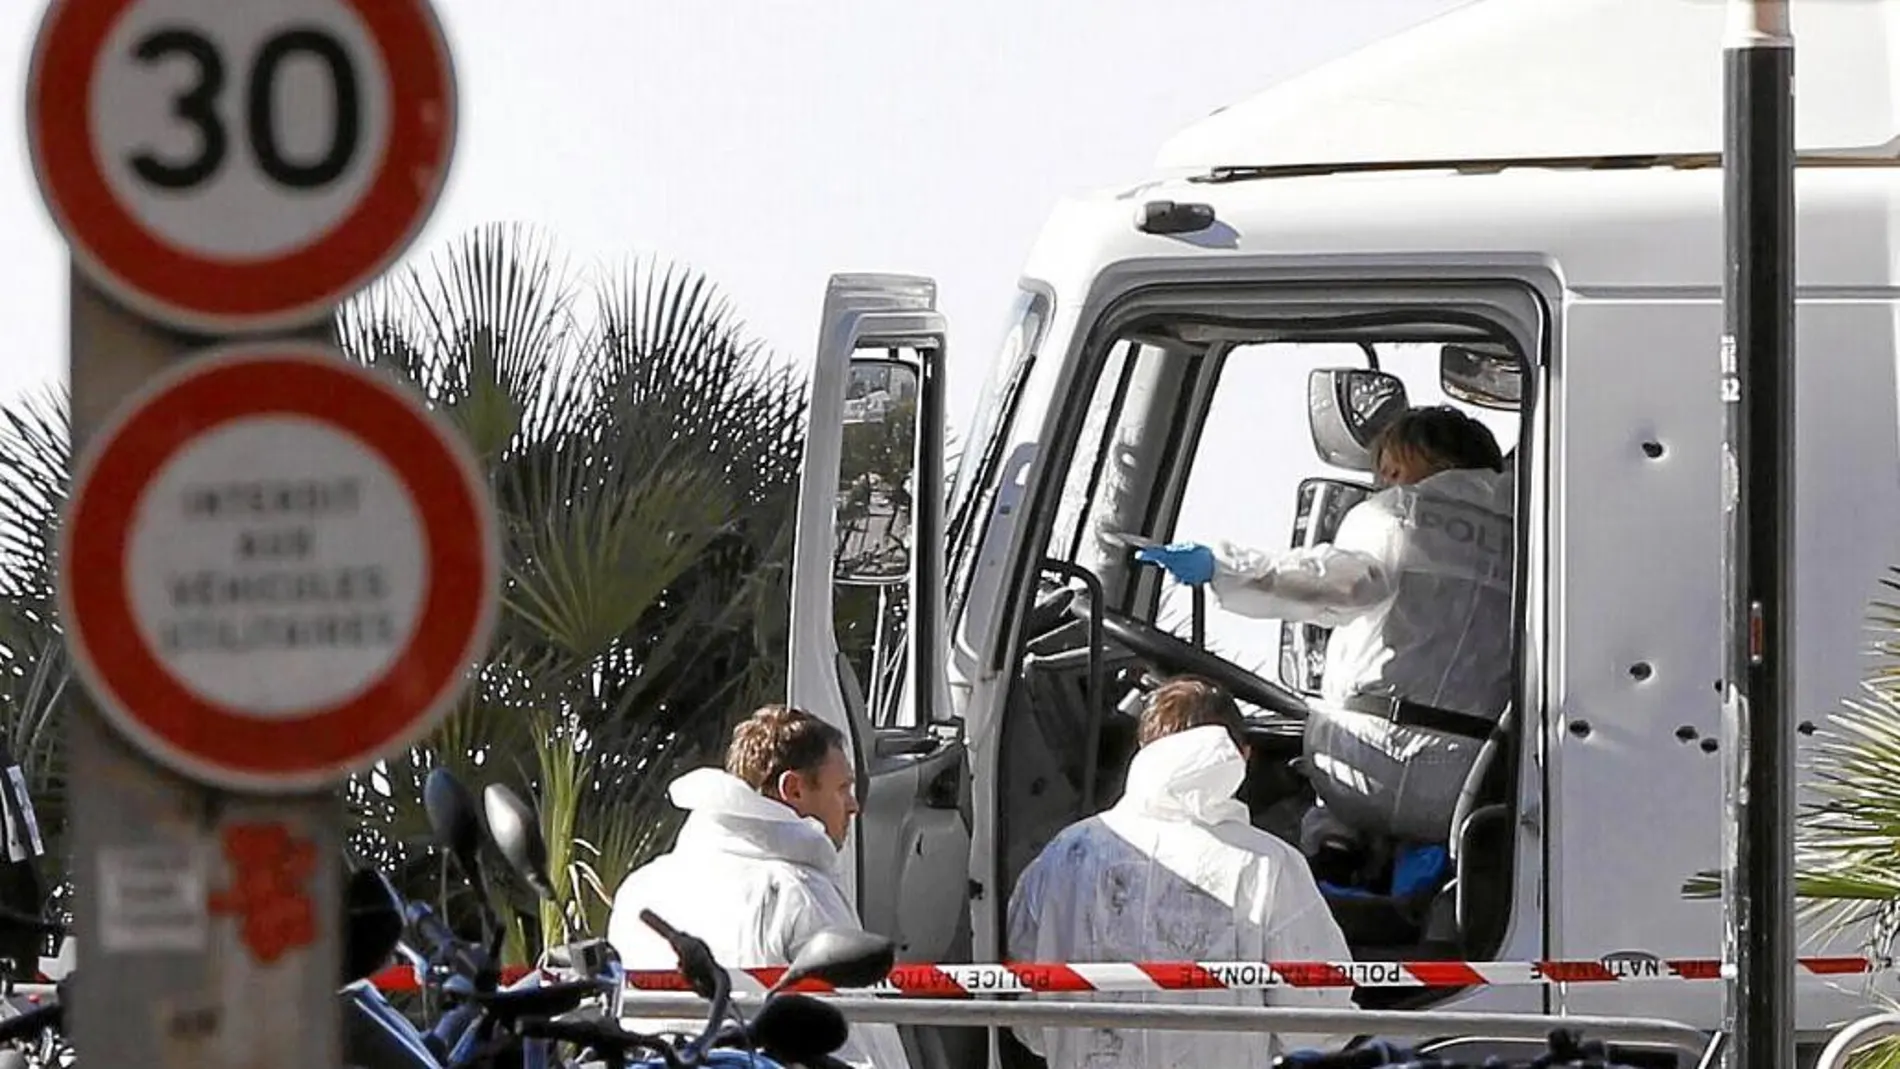 Investigadores de la policía en la cabina del camión que el pasado jueves arrolló a una multitud de personas que se encontraban en la celebración de la Fiesta Nacional francesa